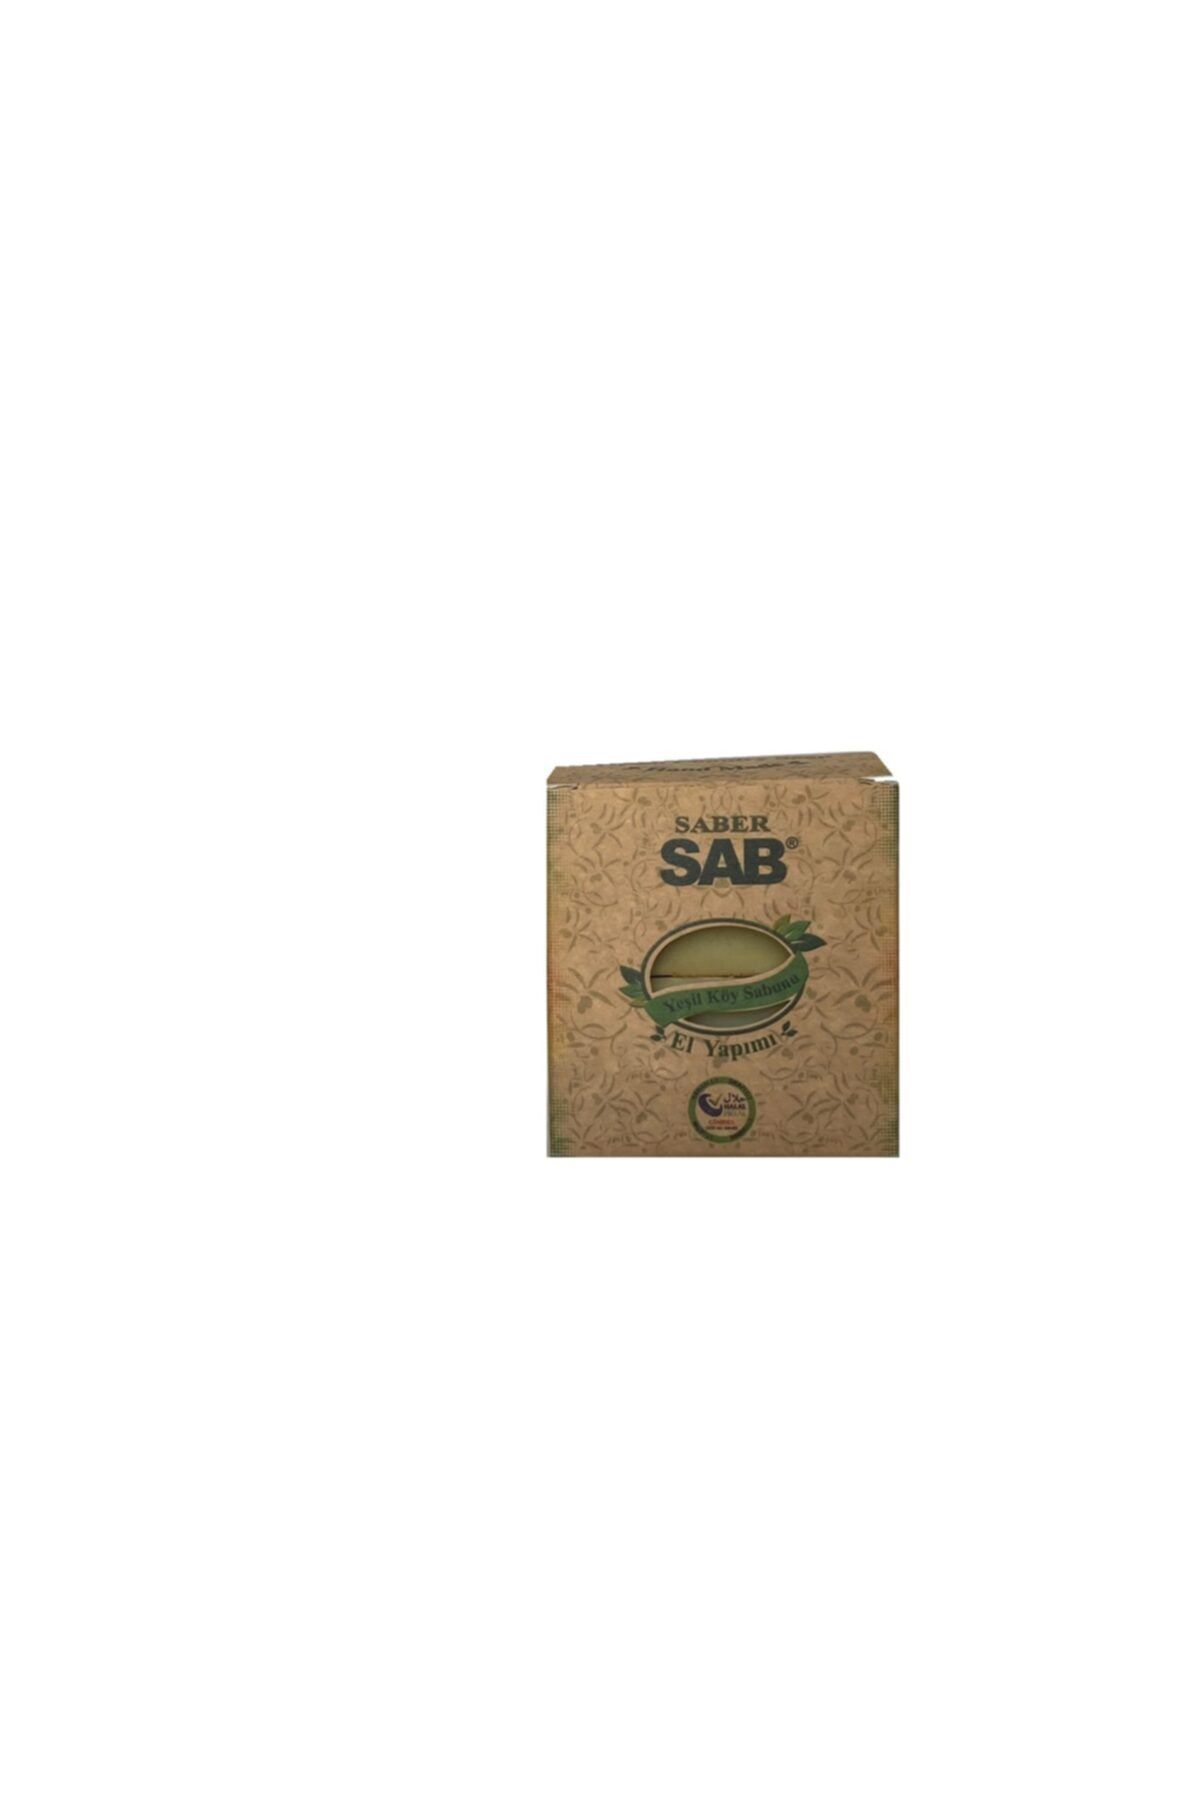 Saber Sab Sab-yeşil Köy Sabunu ( 200 gr. X 2 adet = 400 gr. )